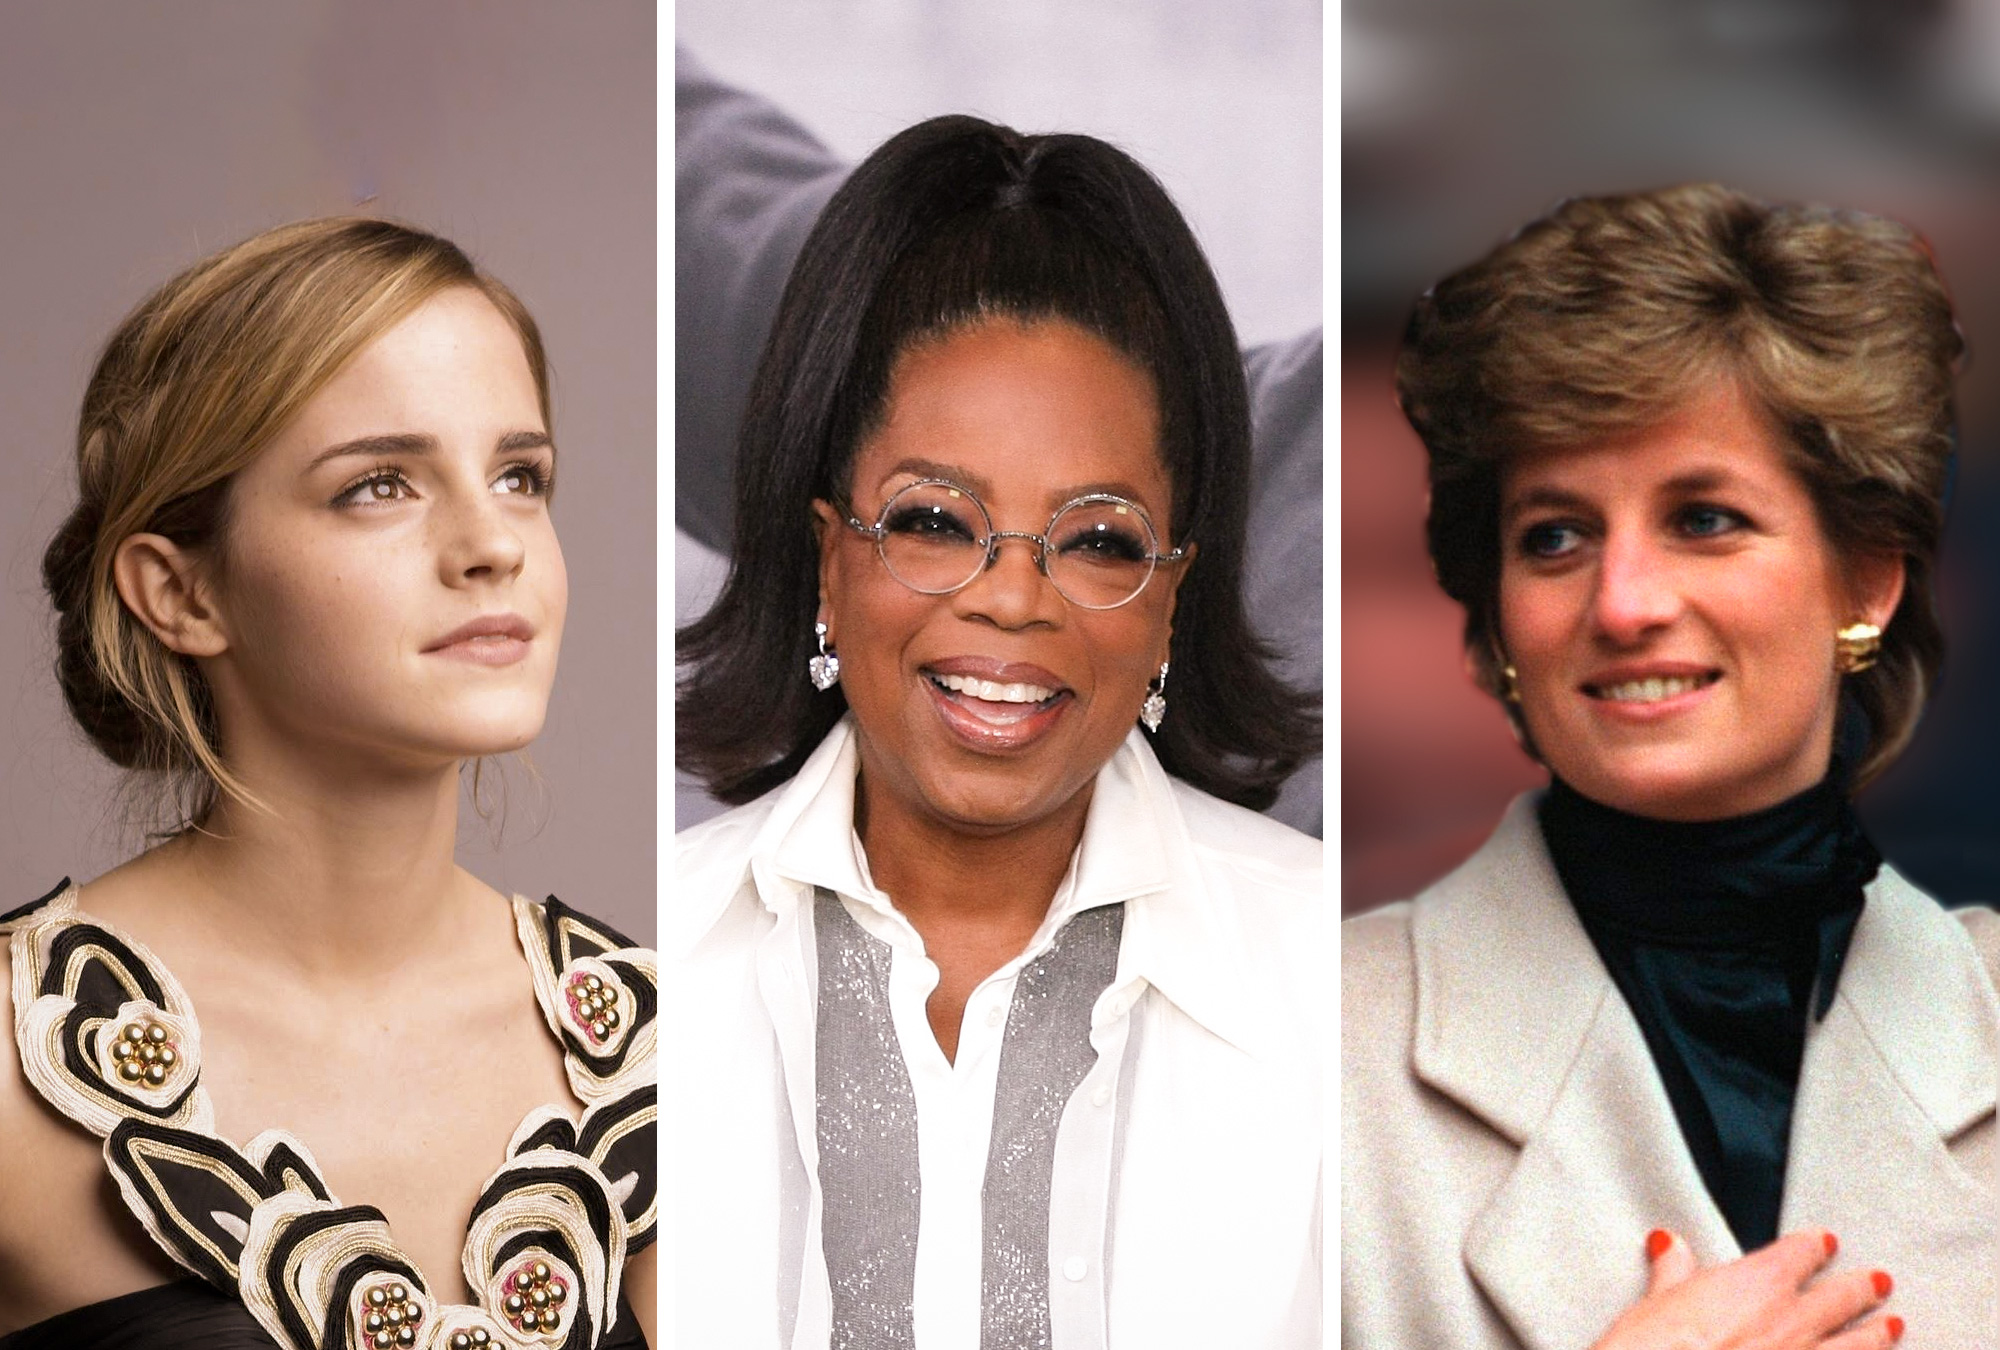 8 mujeres influyentes que admirar - Emprendedor